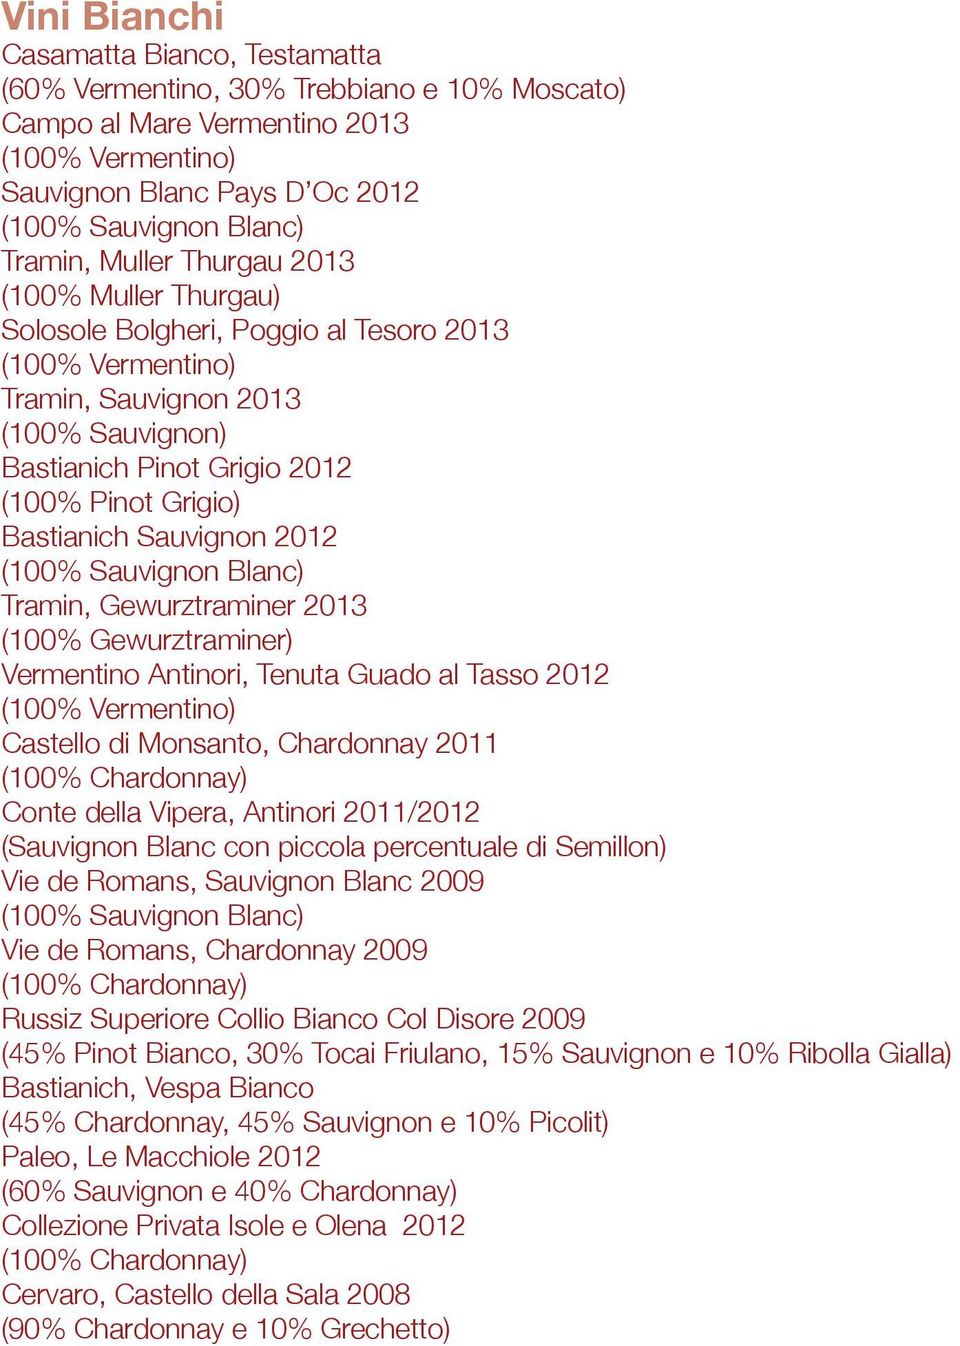 Bastianich Sauvignon 2012 (100% Sauvignon Blanc) Tramin, Gewurztraminer 2013 (100% Gewurztraminer) Vermentino Antinori, Tenuta Guado al Tasso 2012 (100% Vermentino) Castello di Monsanto, Chardonnay